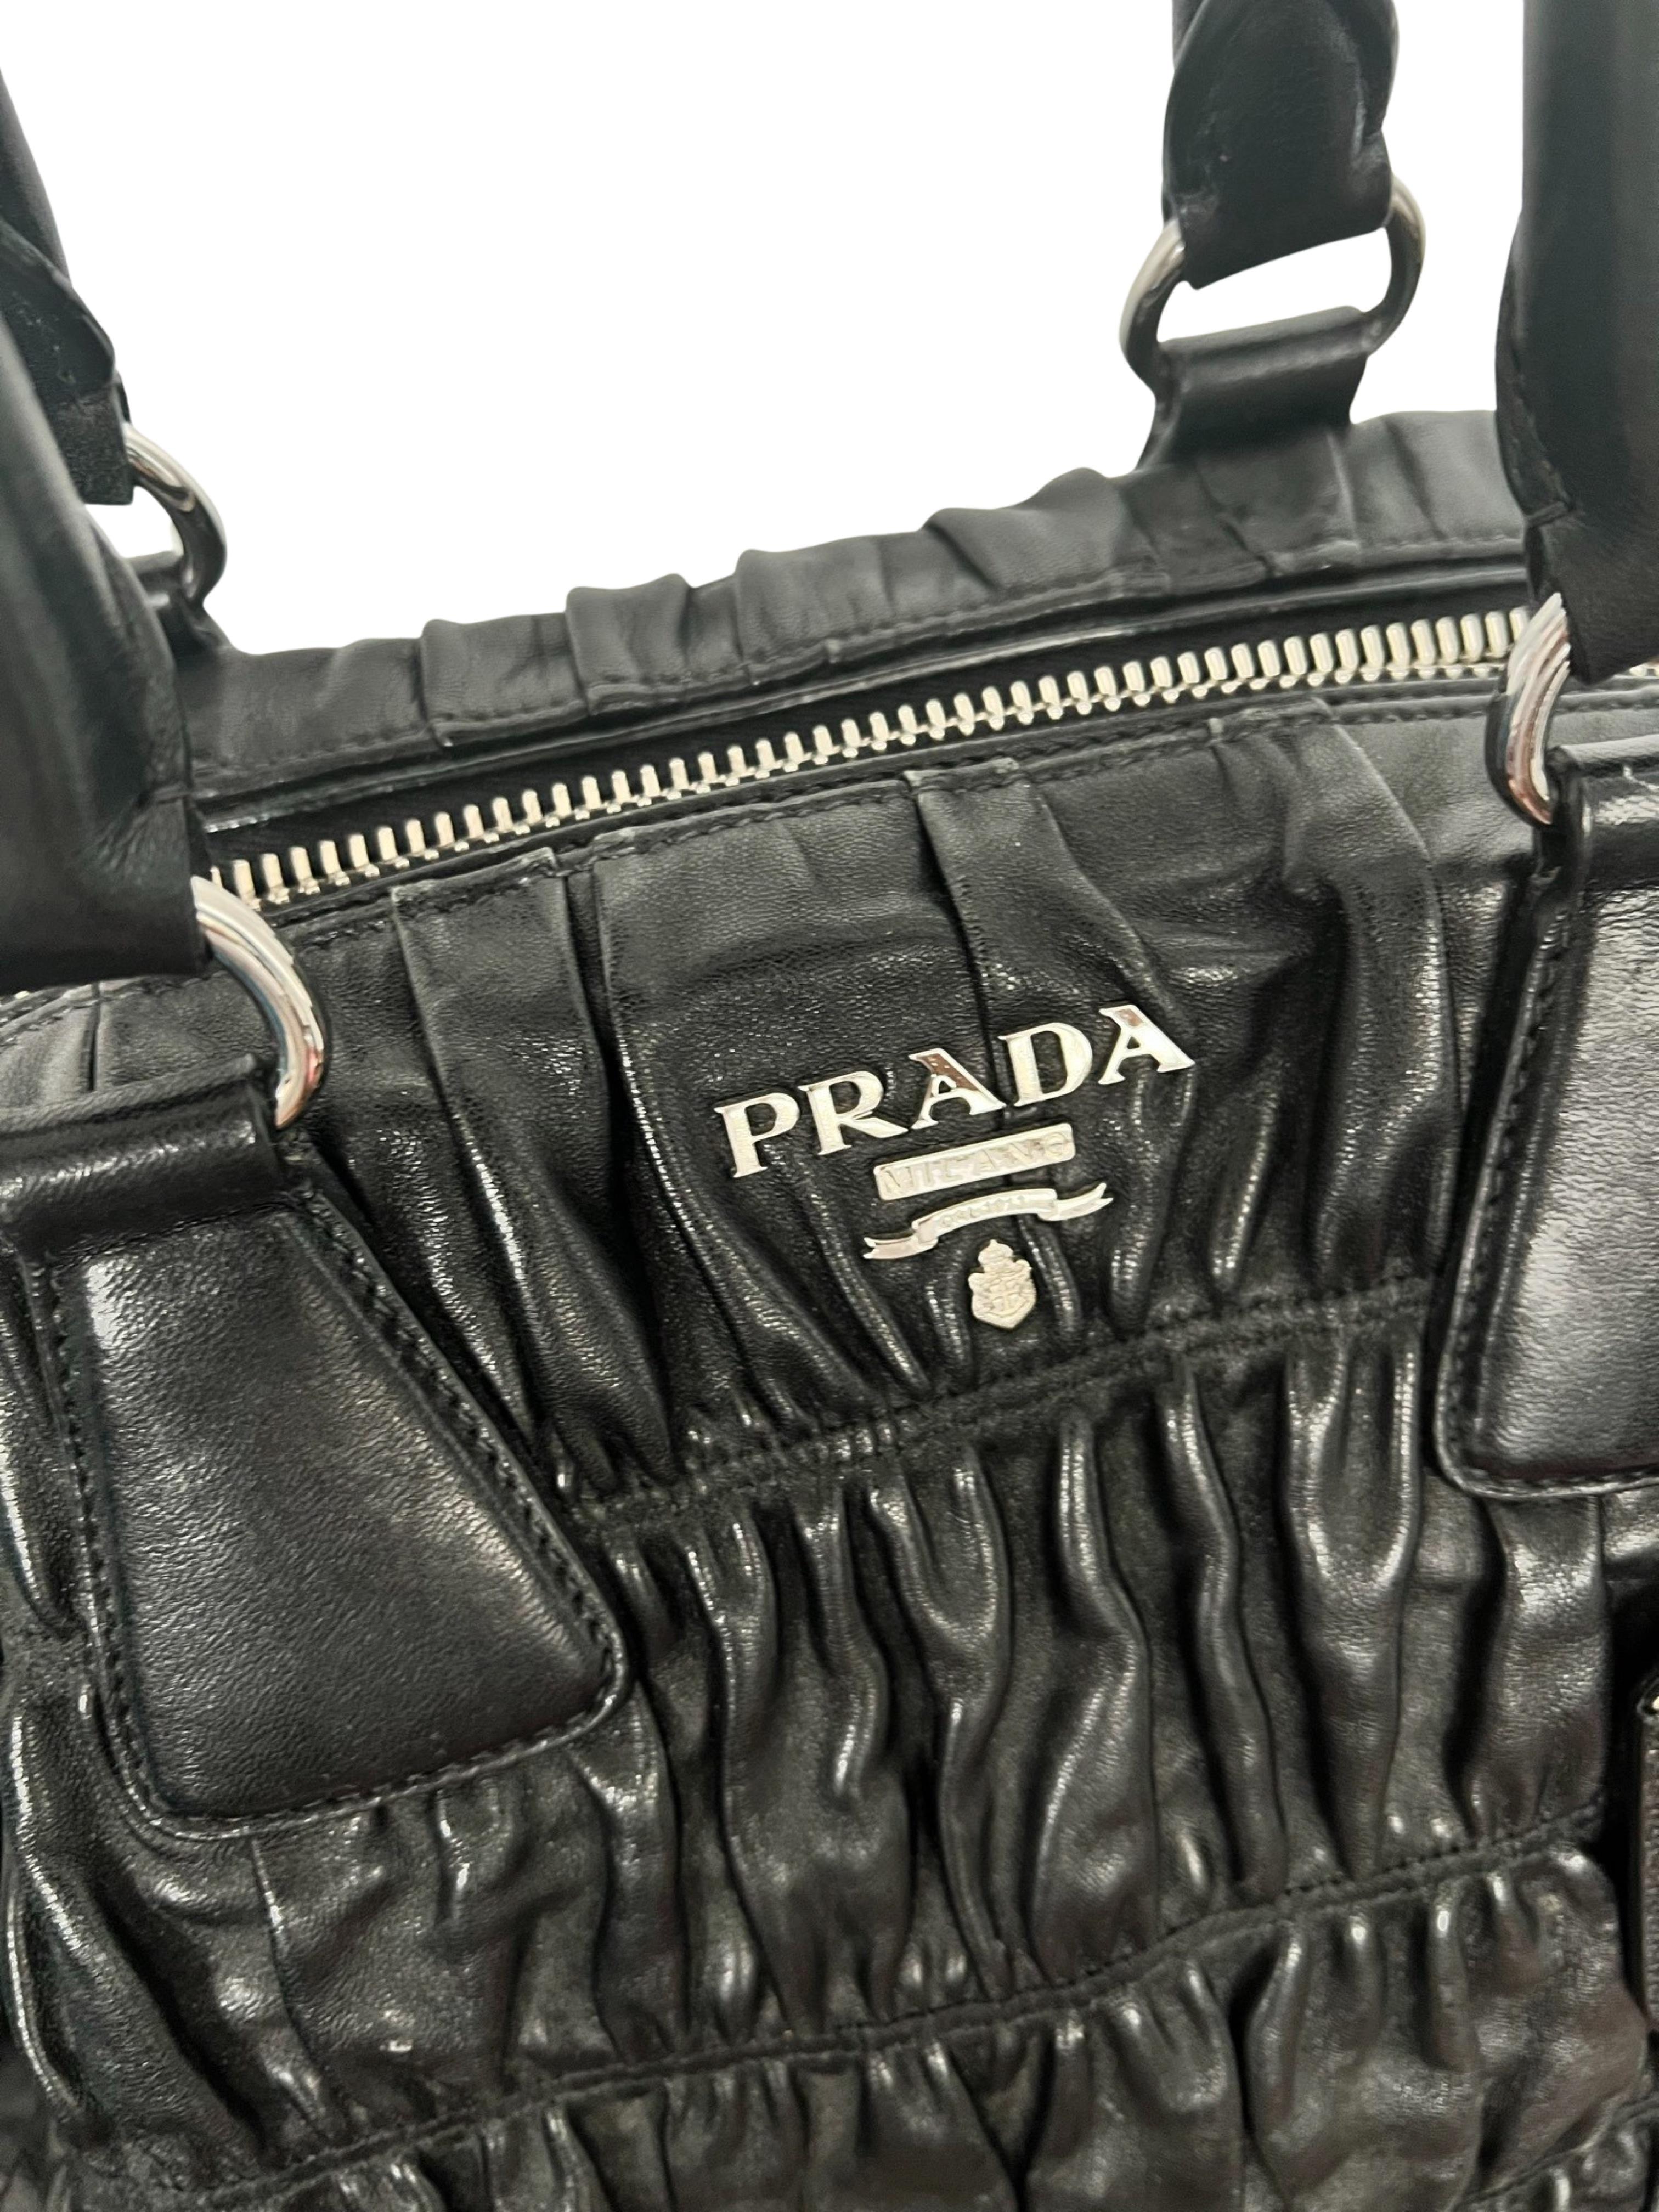 Erhöhen Sie Ihren Stil mit der Prada Nappa Gaufre Bag, in der sich tadellose Handwerkskunst und raffinierte Details treffen, auf ein neues Niveau. Diese exquisite Tasche strahlt nicht nur Eleganz aus, sondern bietet auch außergewöhnliche